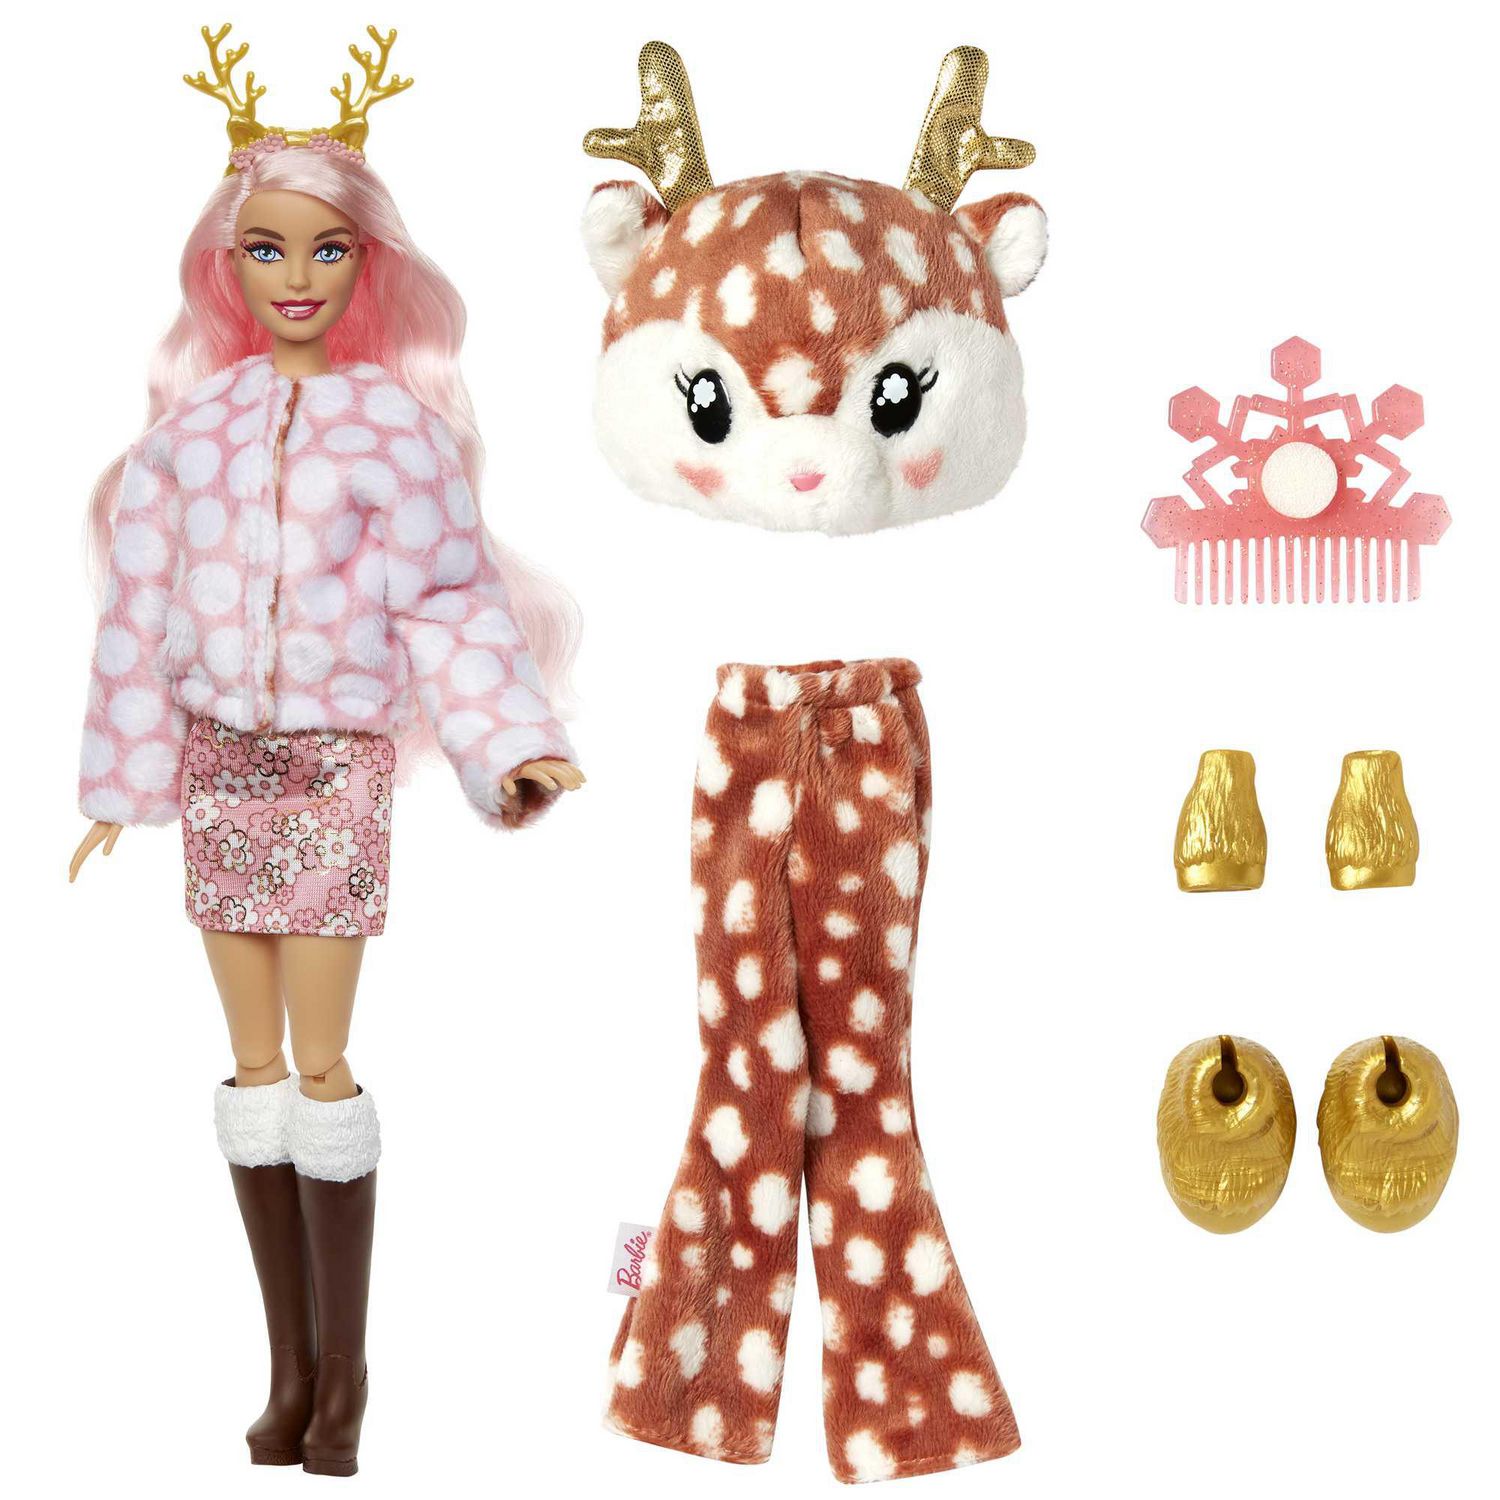 Barbie Dolls | Cutie Reveal Doll | Snowflake Sparkle Deer | Kids